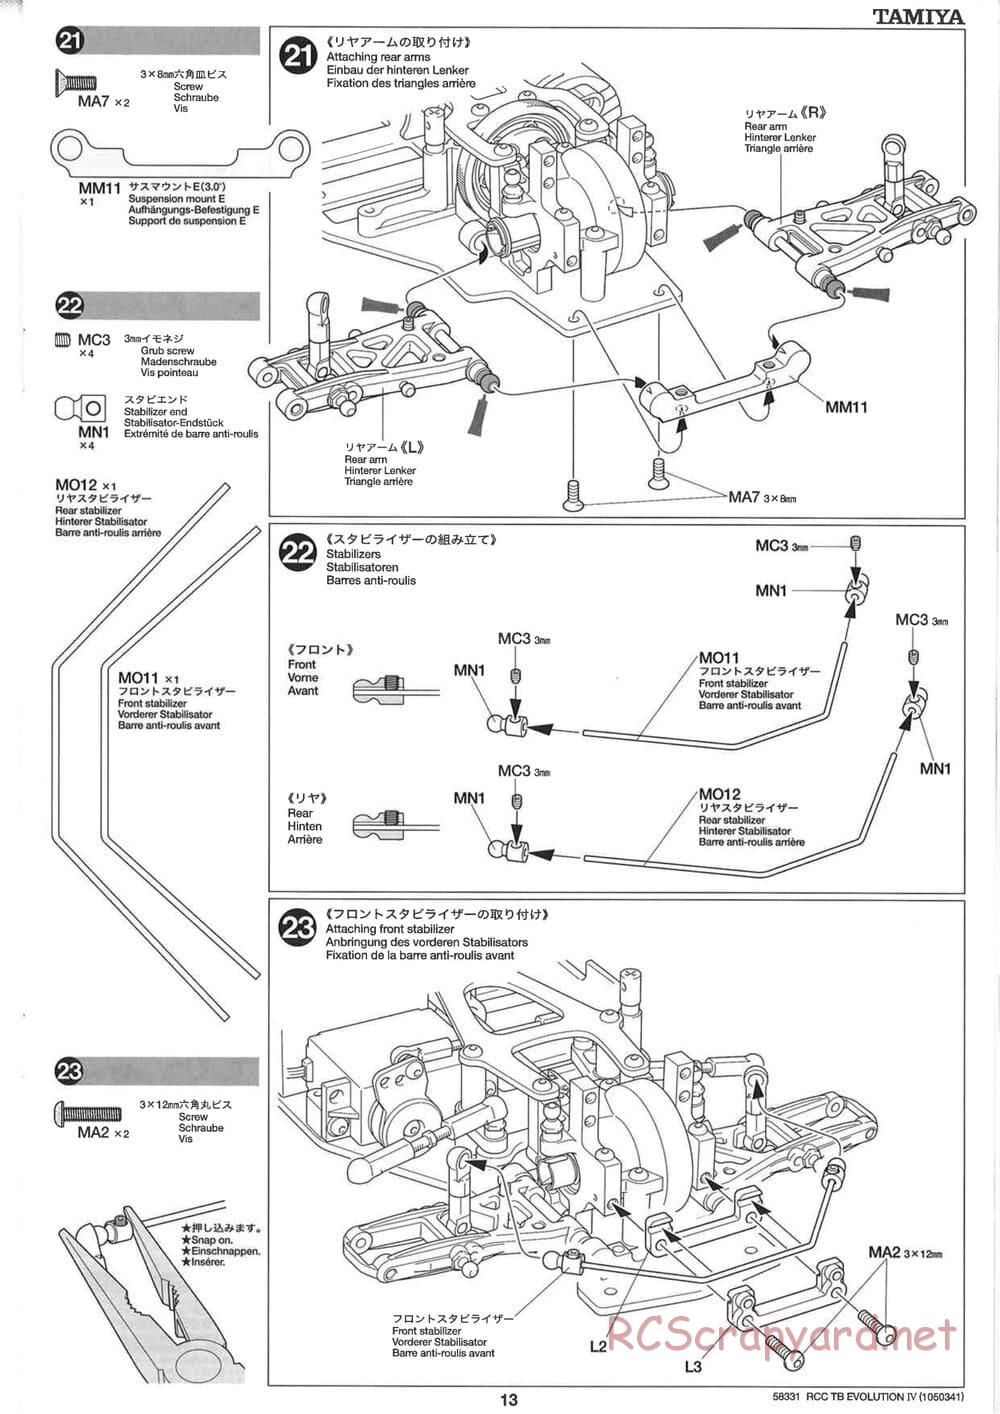 Tamiya - TB Evolution IV Chassis - Manual - Page 13